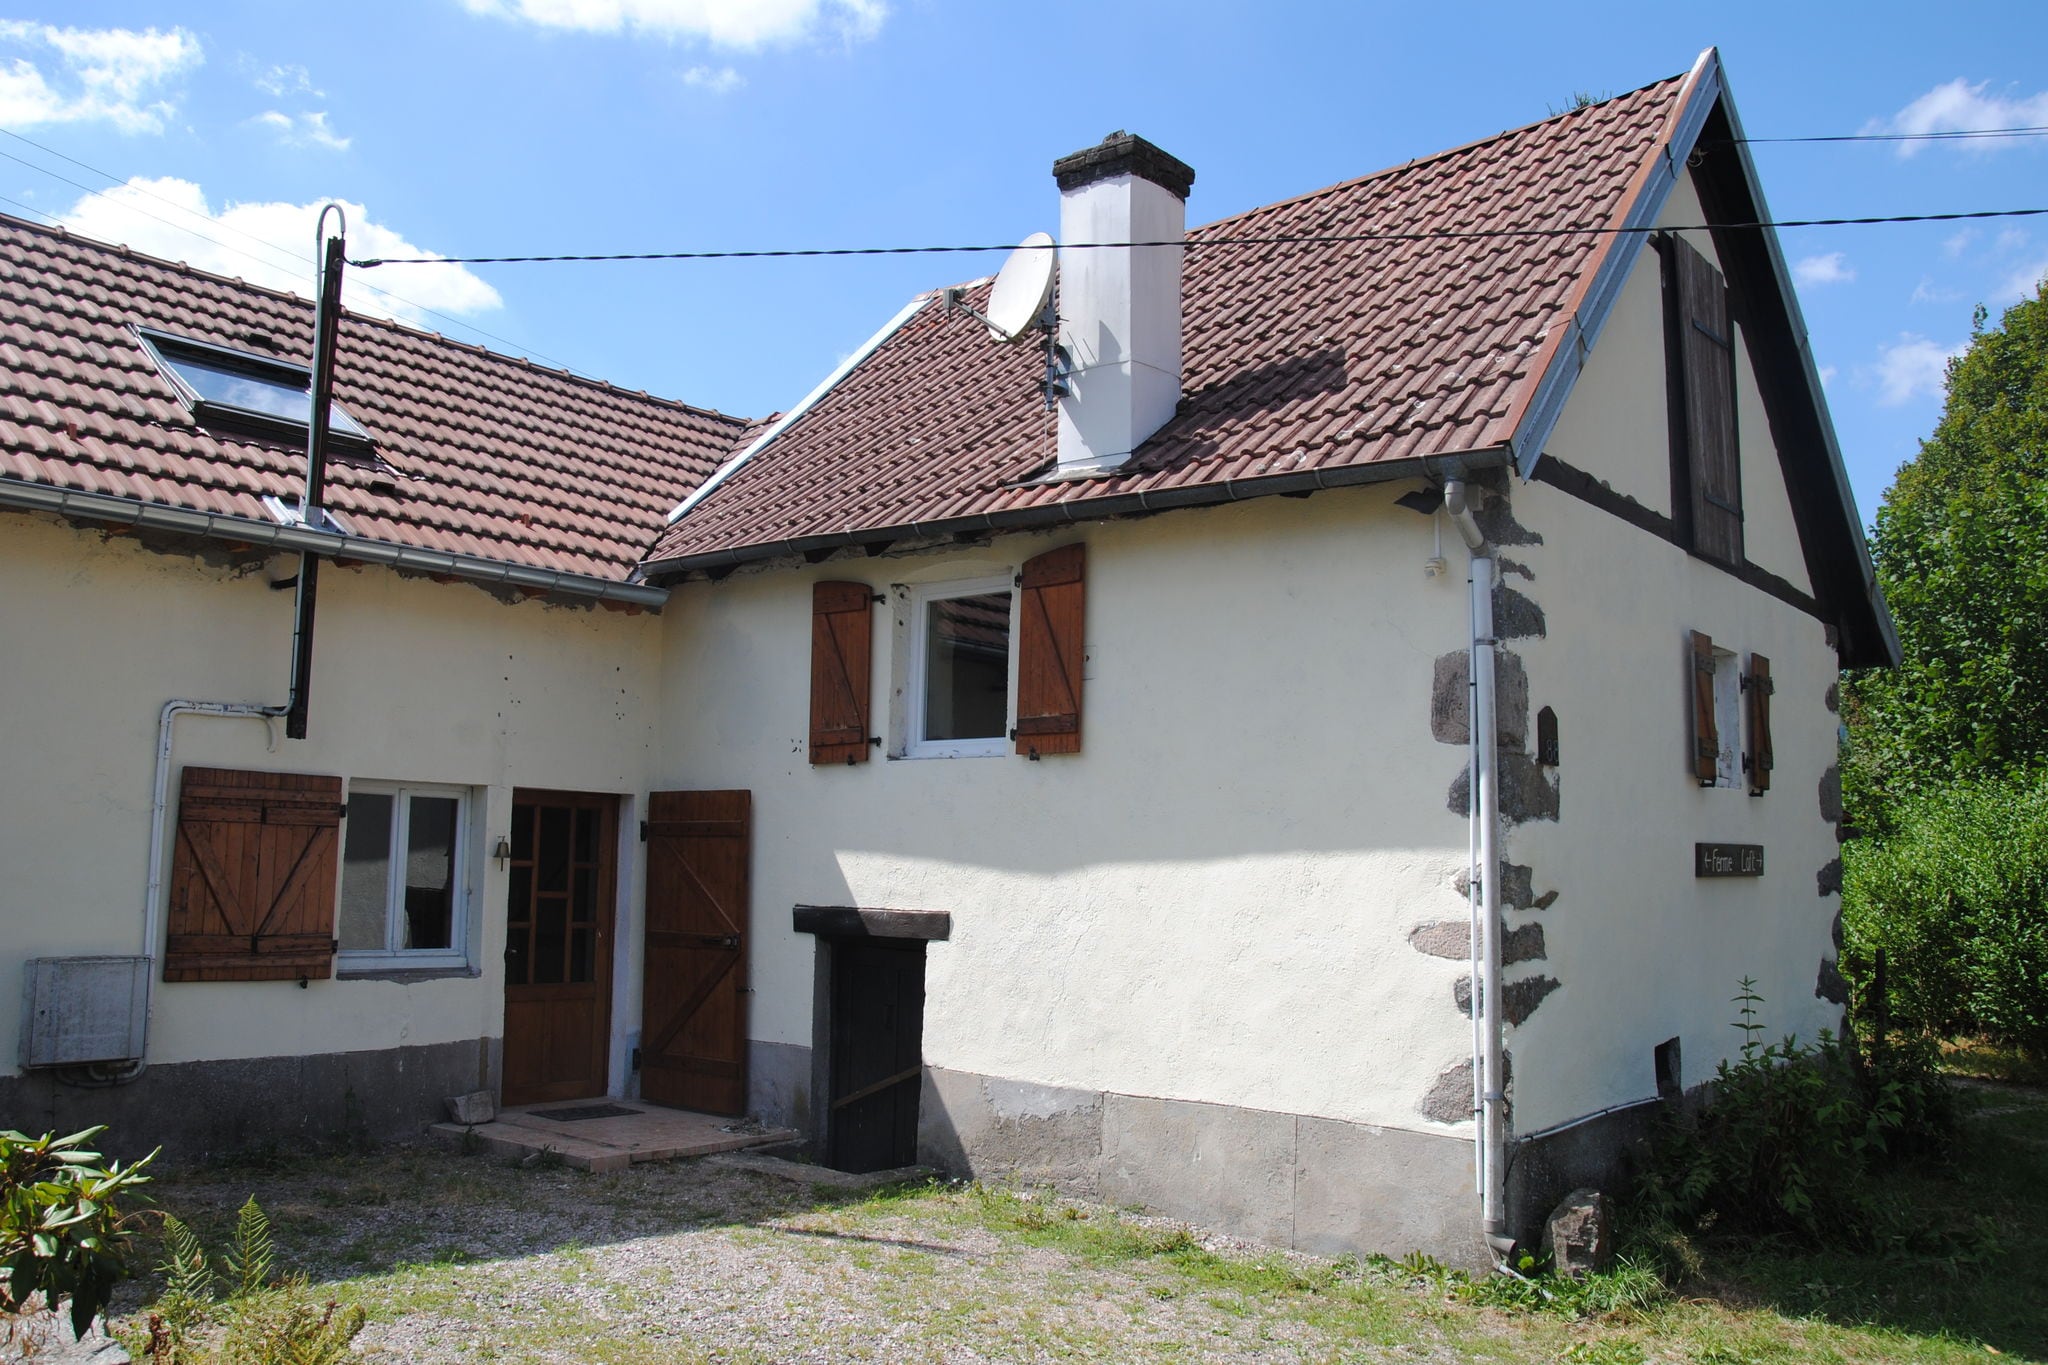 Vrijstaand huis in Lotharingen met weelderig uitzicht